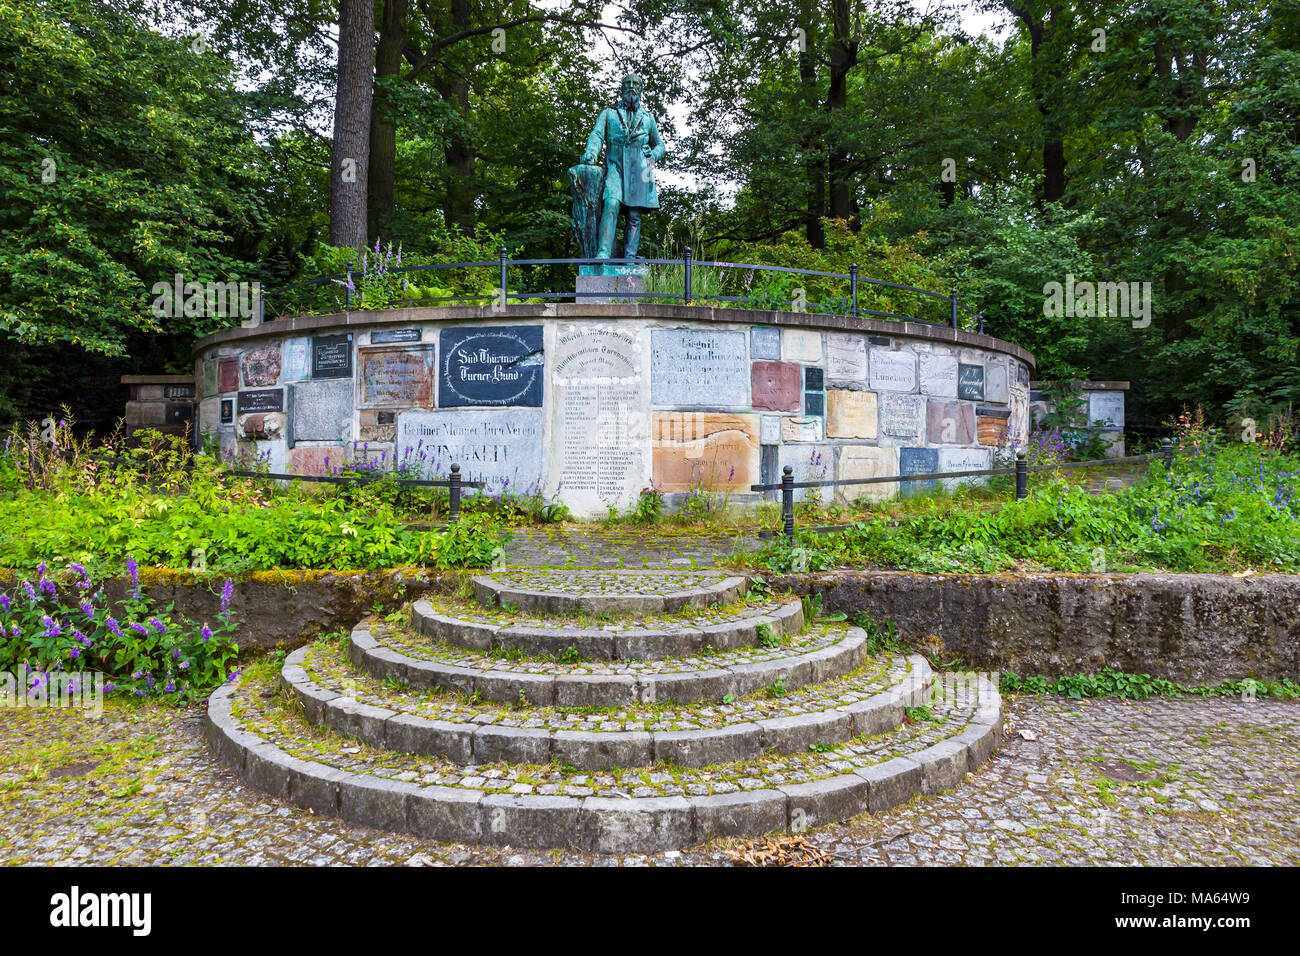 Denkmal von Friedrich Ludwig Jahn, Deutsche Gymnastik Pädagoge. Bekannt als Turnvater Jahn (bedeutet "Vater der Gymnastik' Jahn) Stockfoto